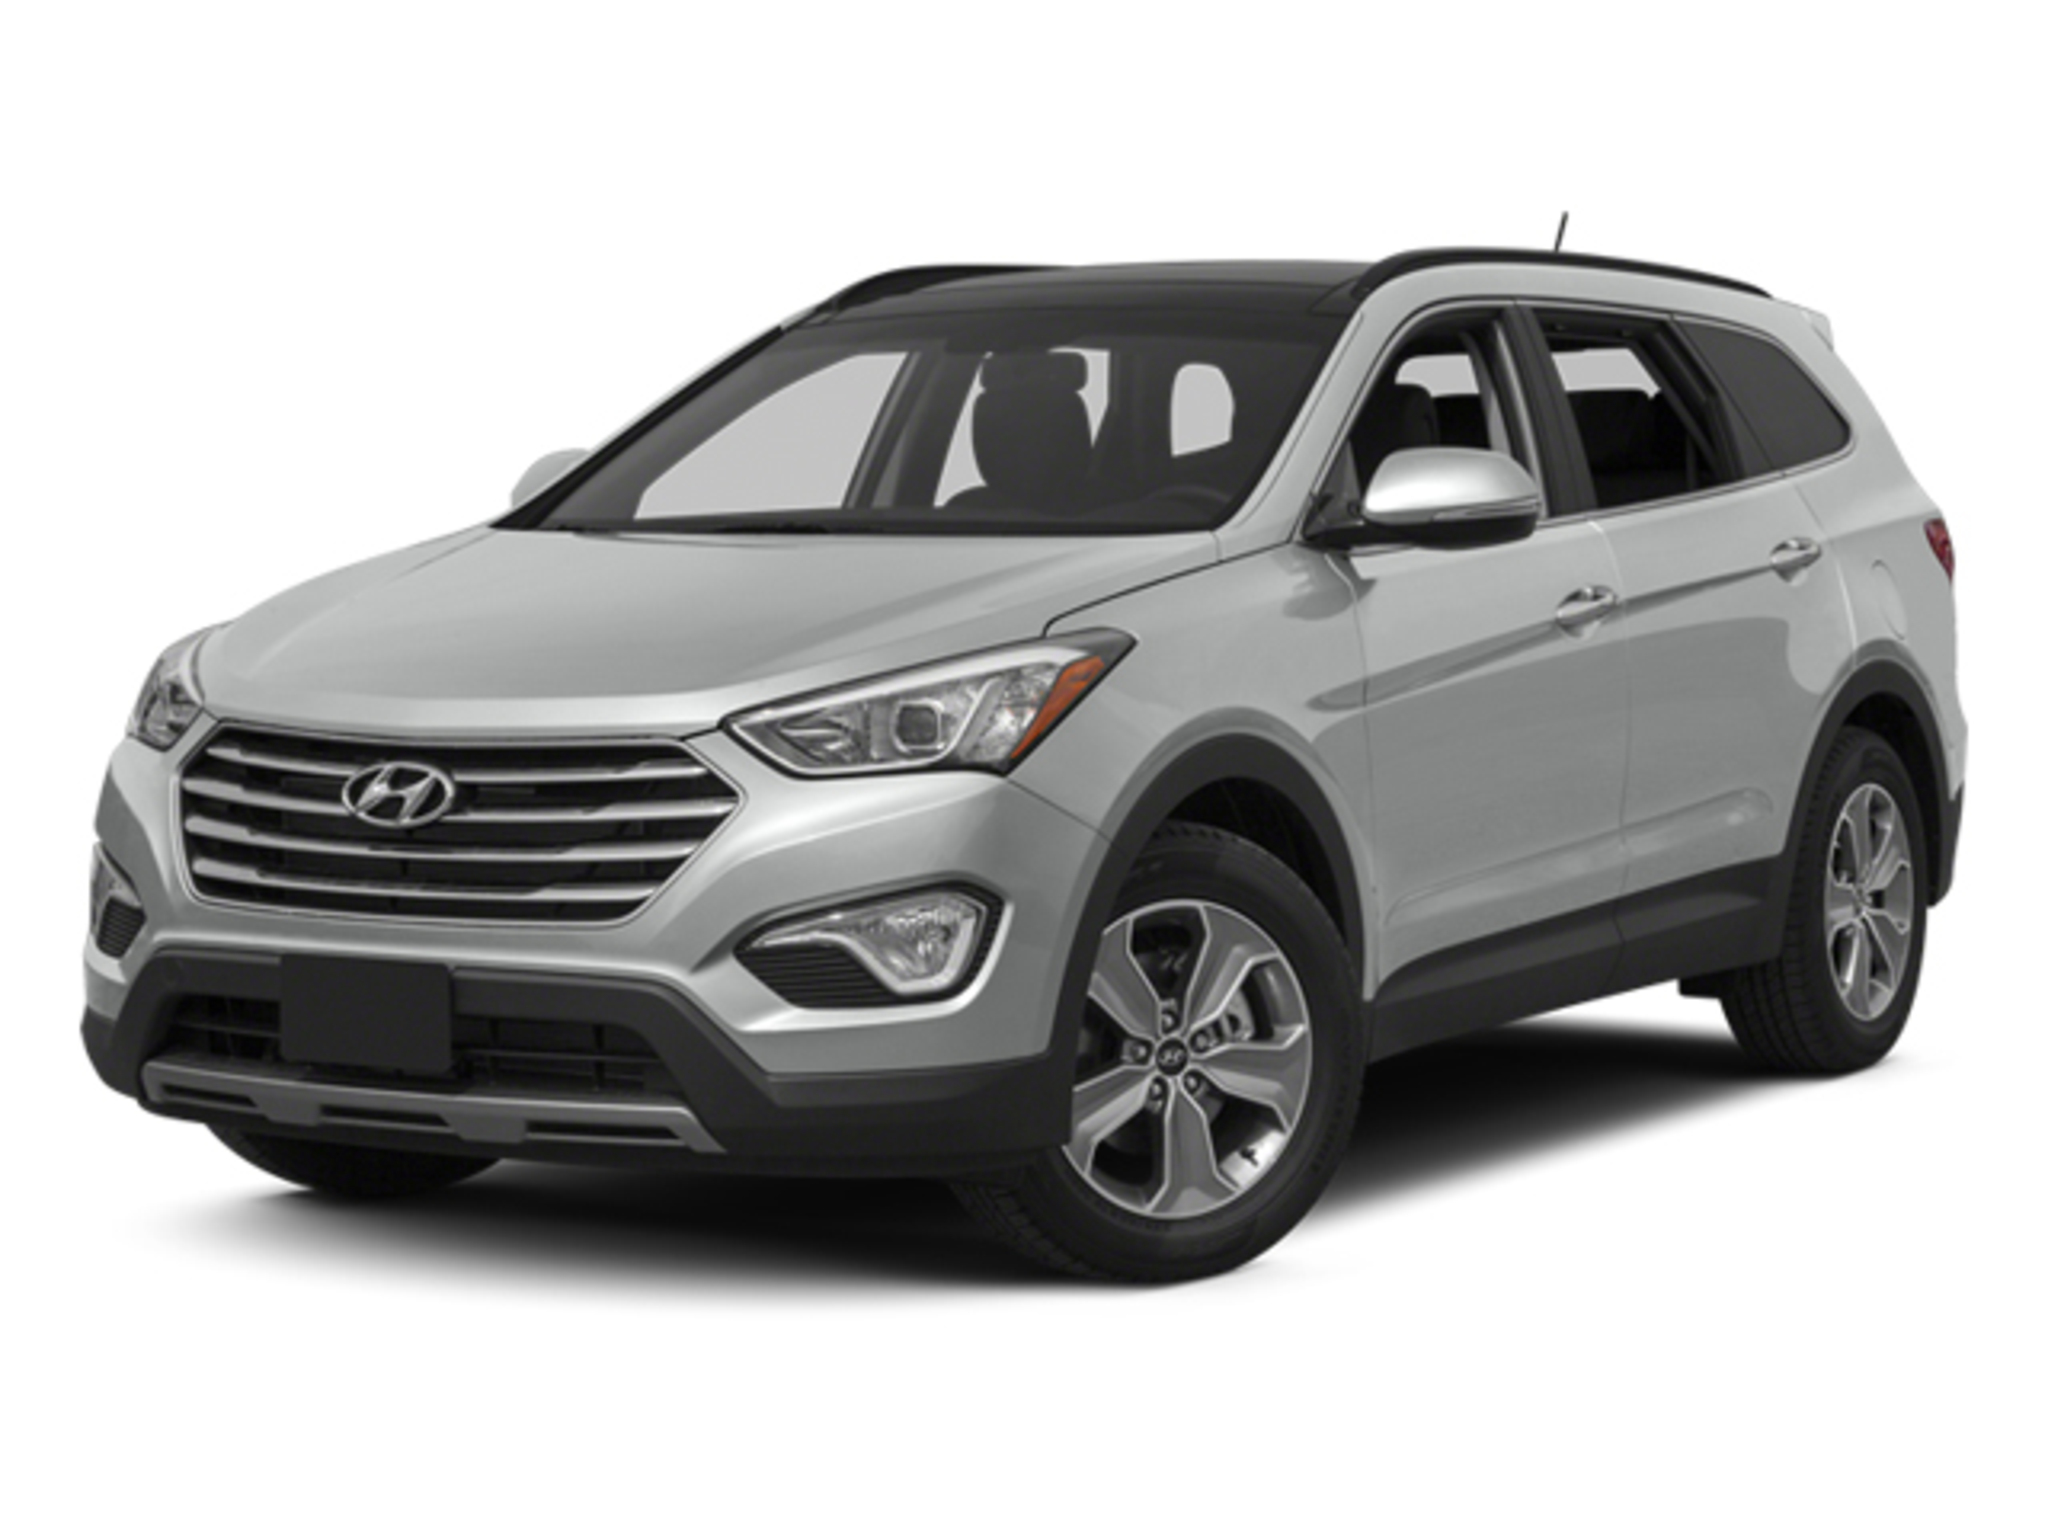 2013 Hyundai Santa Fe - Compare Prices, Trims, Options, Specs, Photos, Reviews, Deals 2013 Hyundai Santa Fe Tire Size P235 65r17 Sport